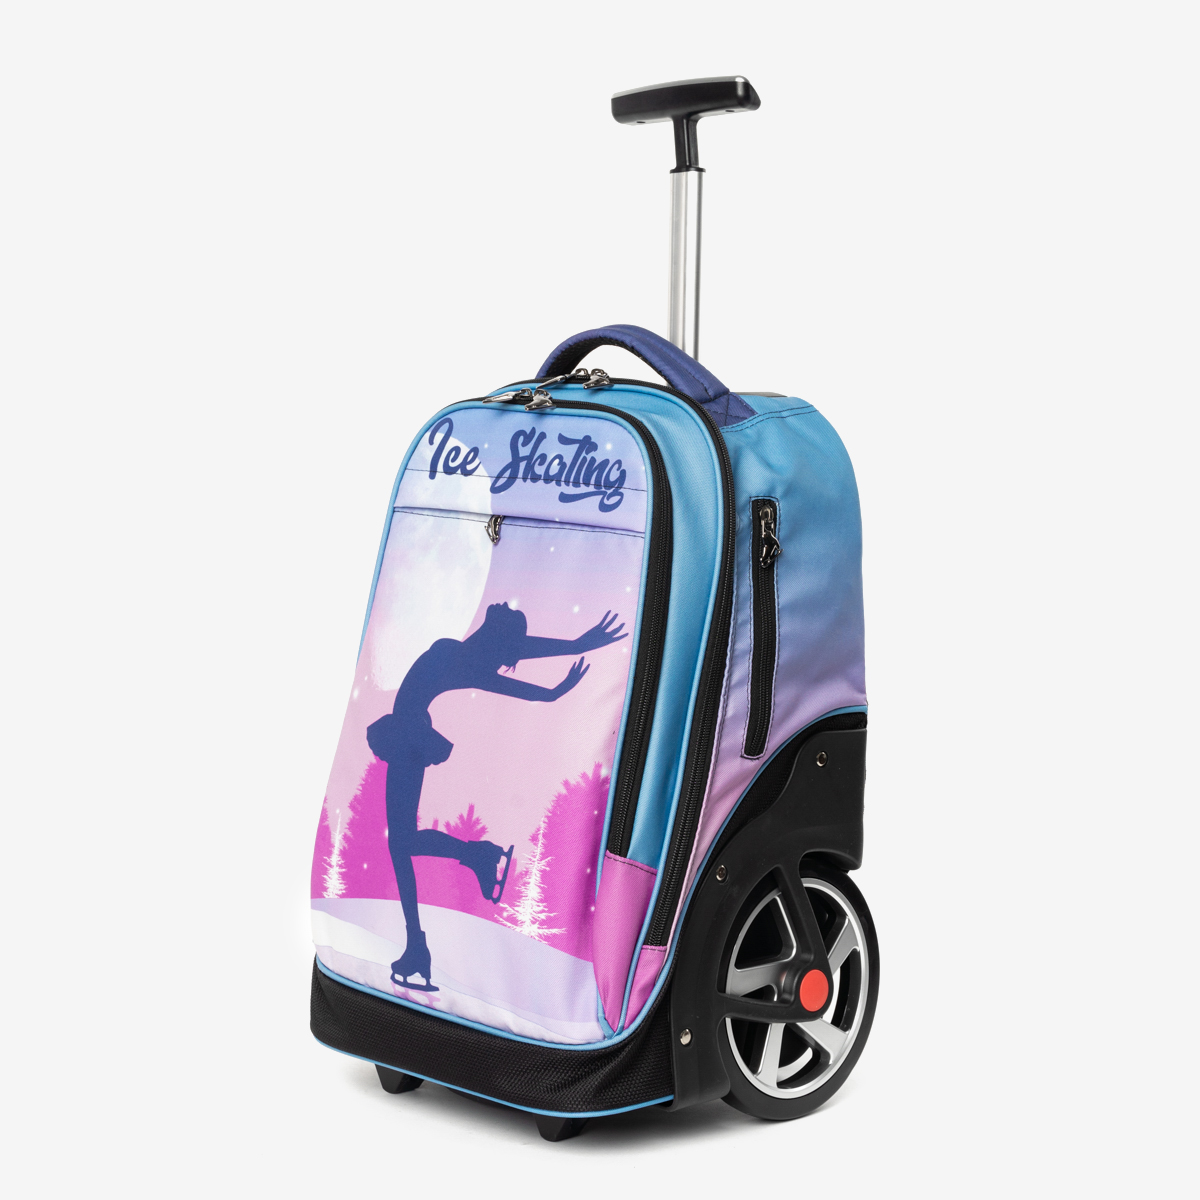 Колеса cube. «Cube» Ice Skating сумка-рюкзак на колесиках. Сумка на колесах Cube / Runa для фигурного катания. Рюкзак на колесах для фигурного катания Runa. Чемодан для фигурного катания Runa.